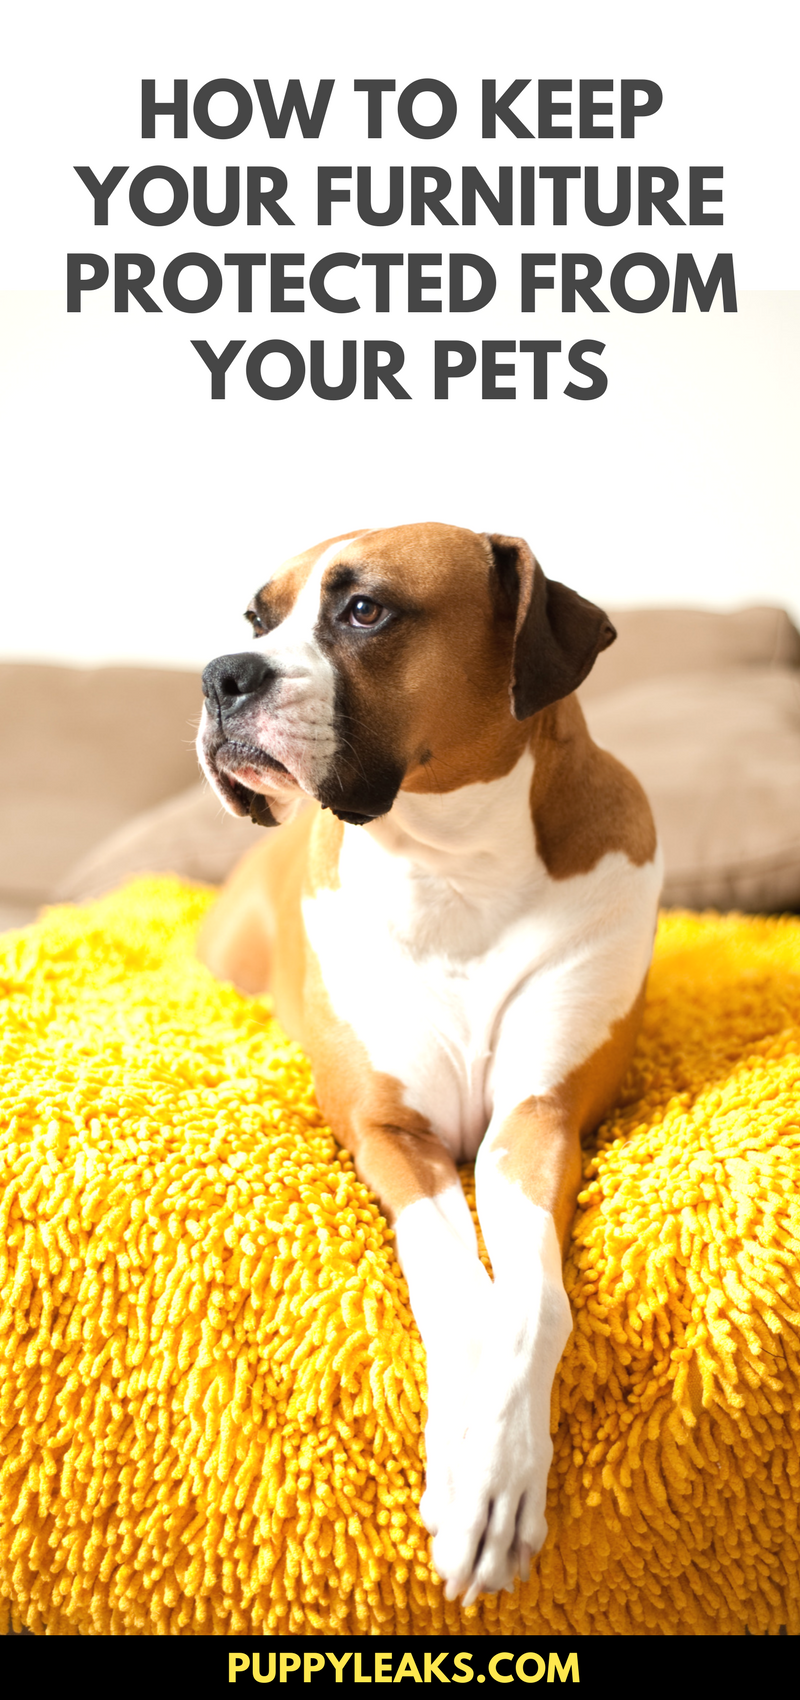 10 eenvoudige manieren om uw meubels hondproof te maken